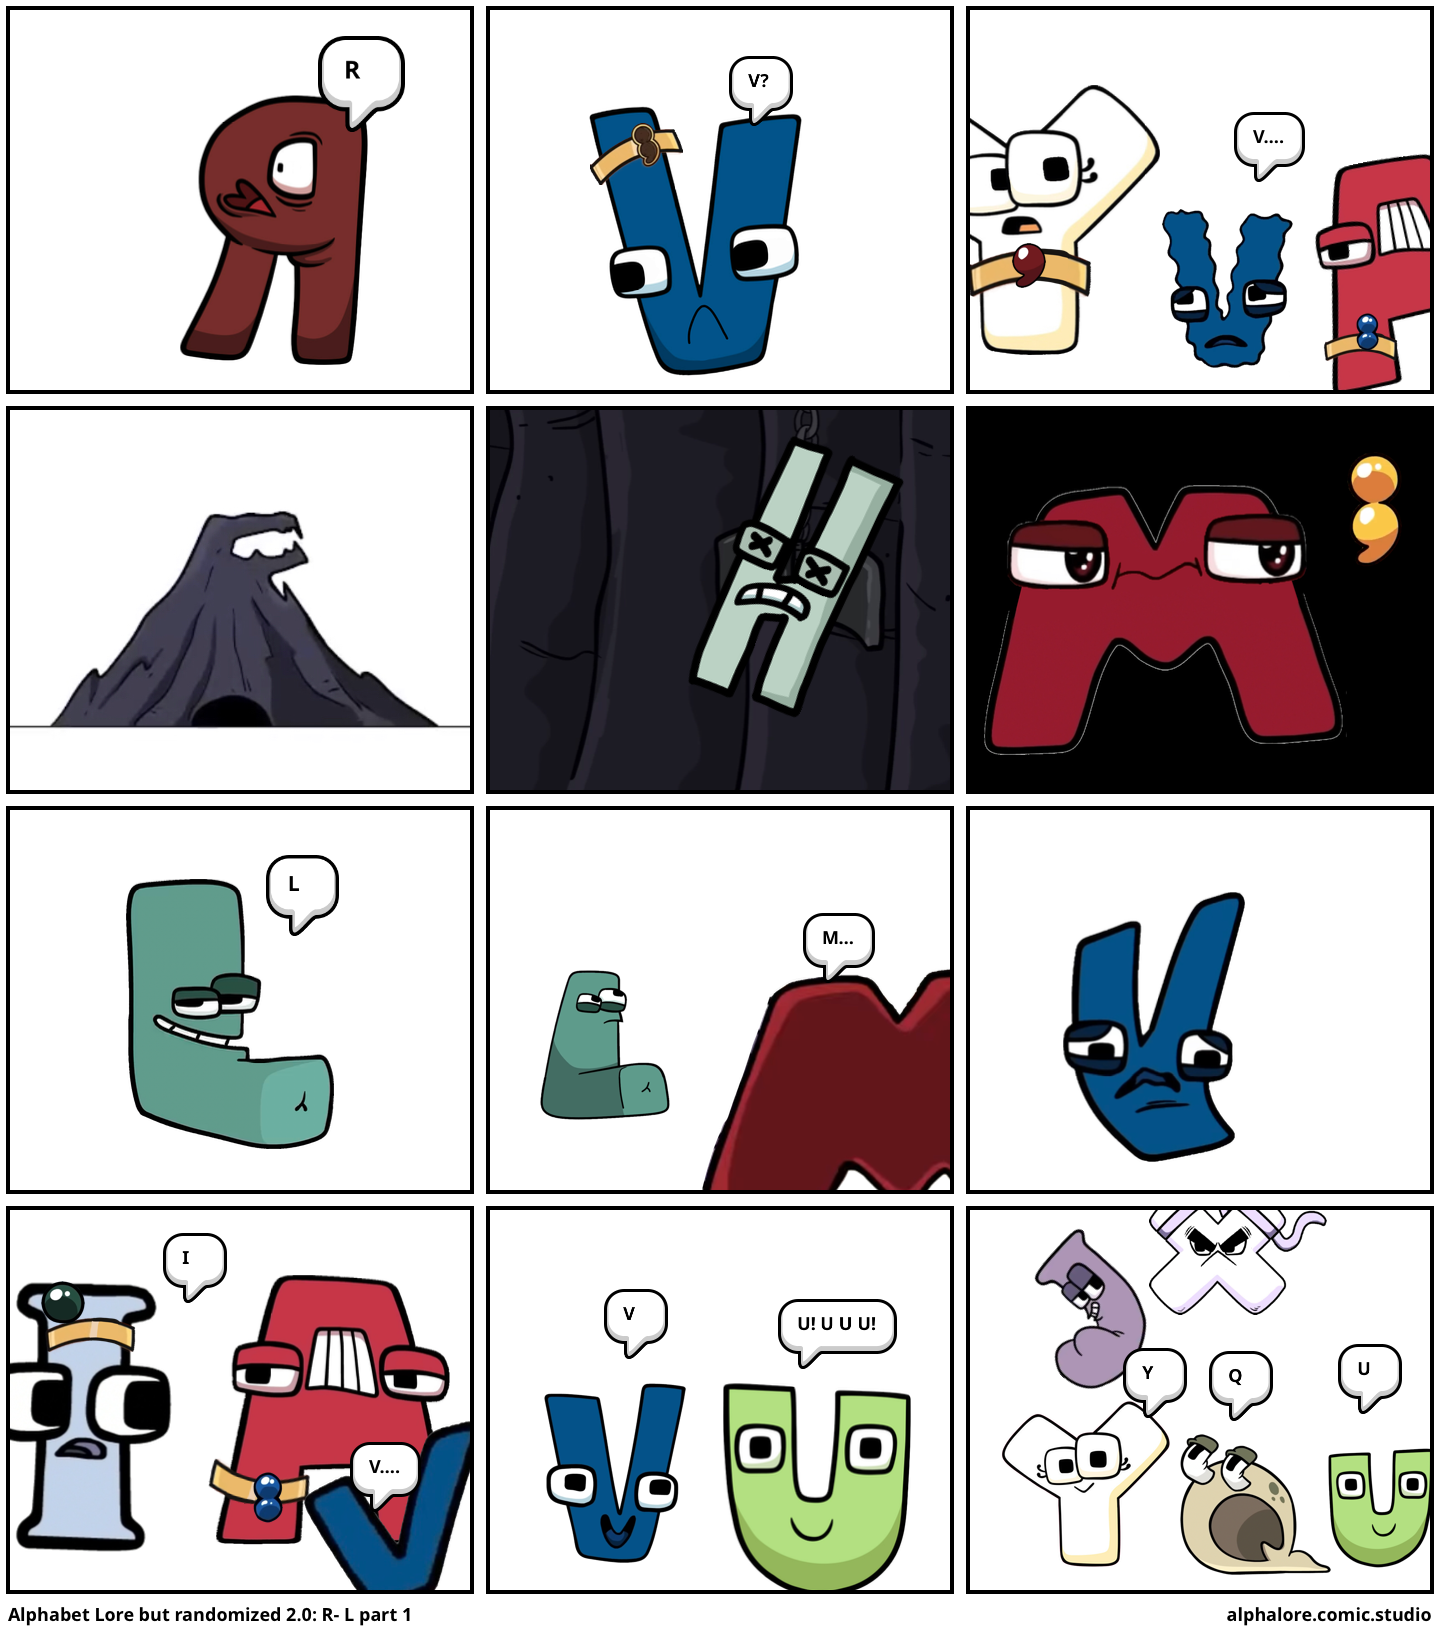 Lowercase alphabet lore part 1 friends! - Comic Studio